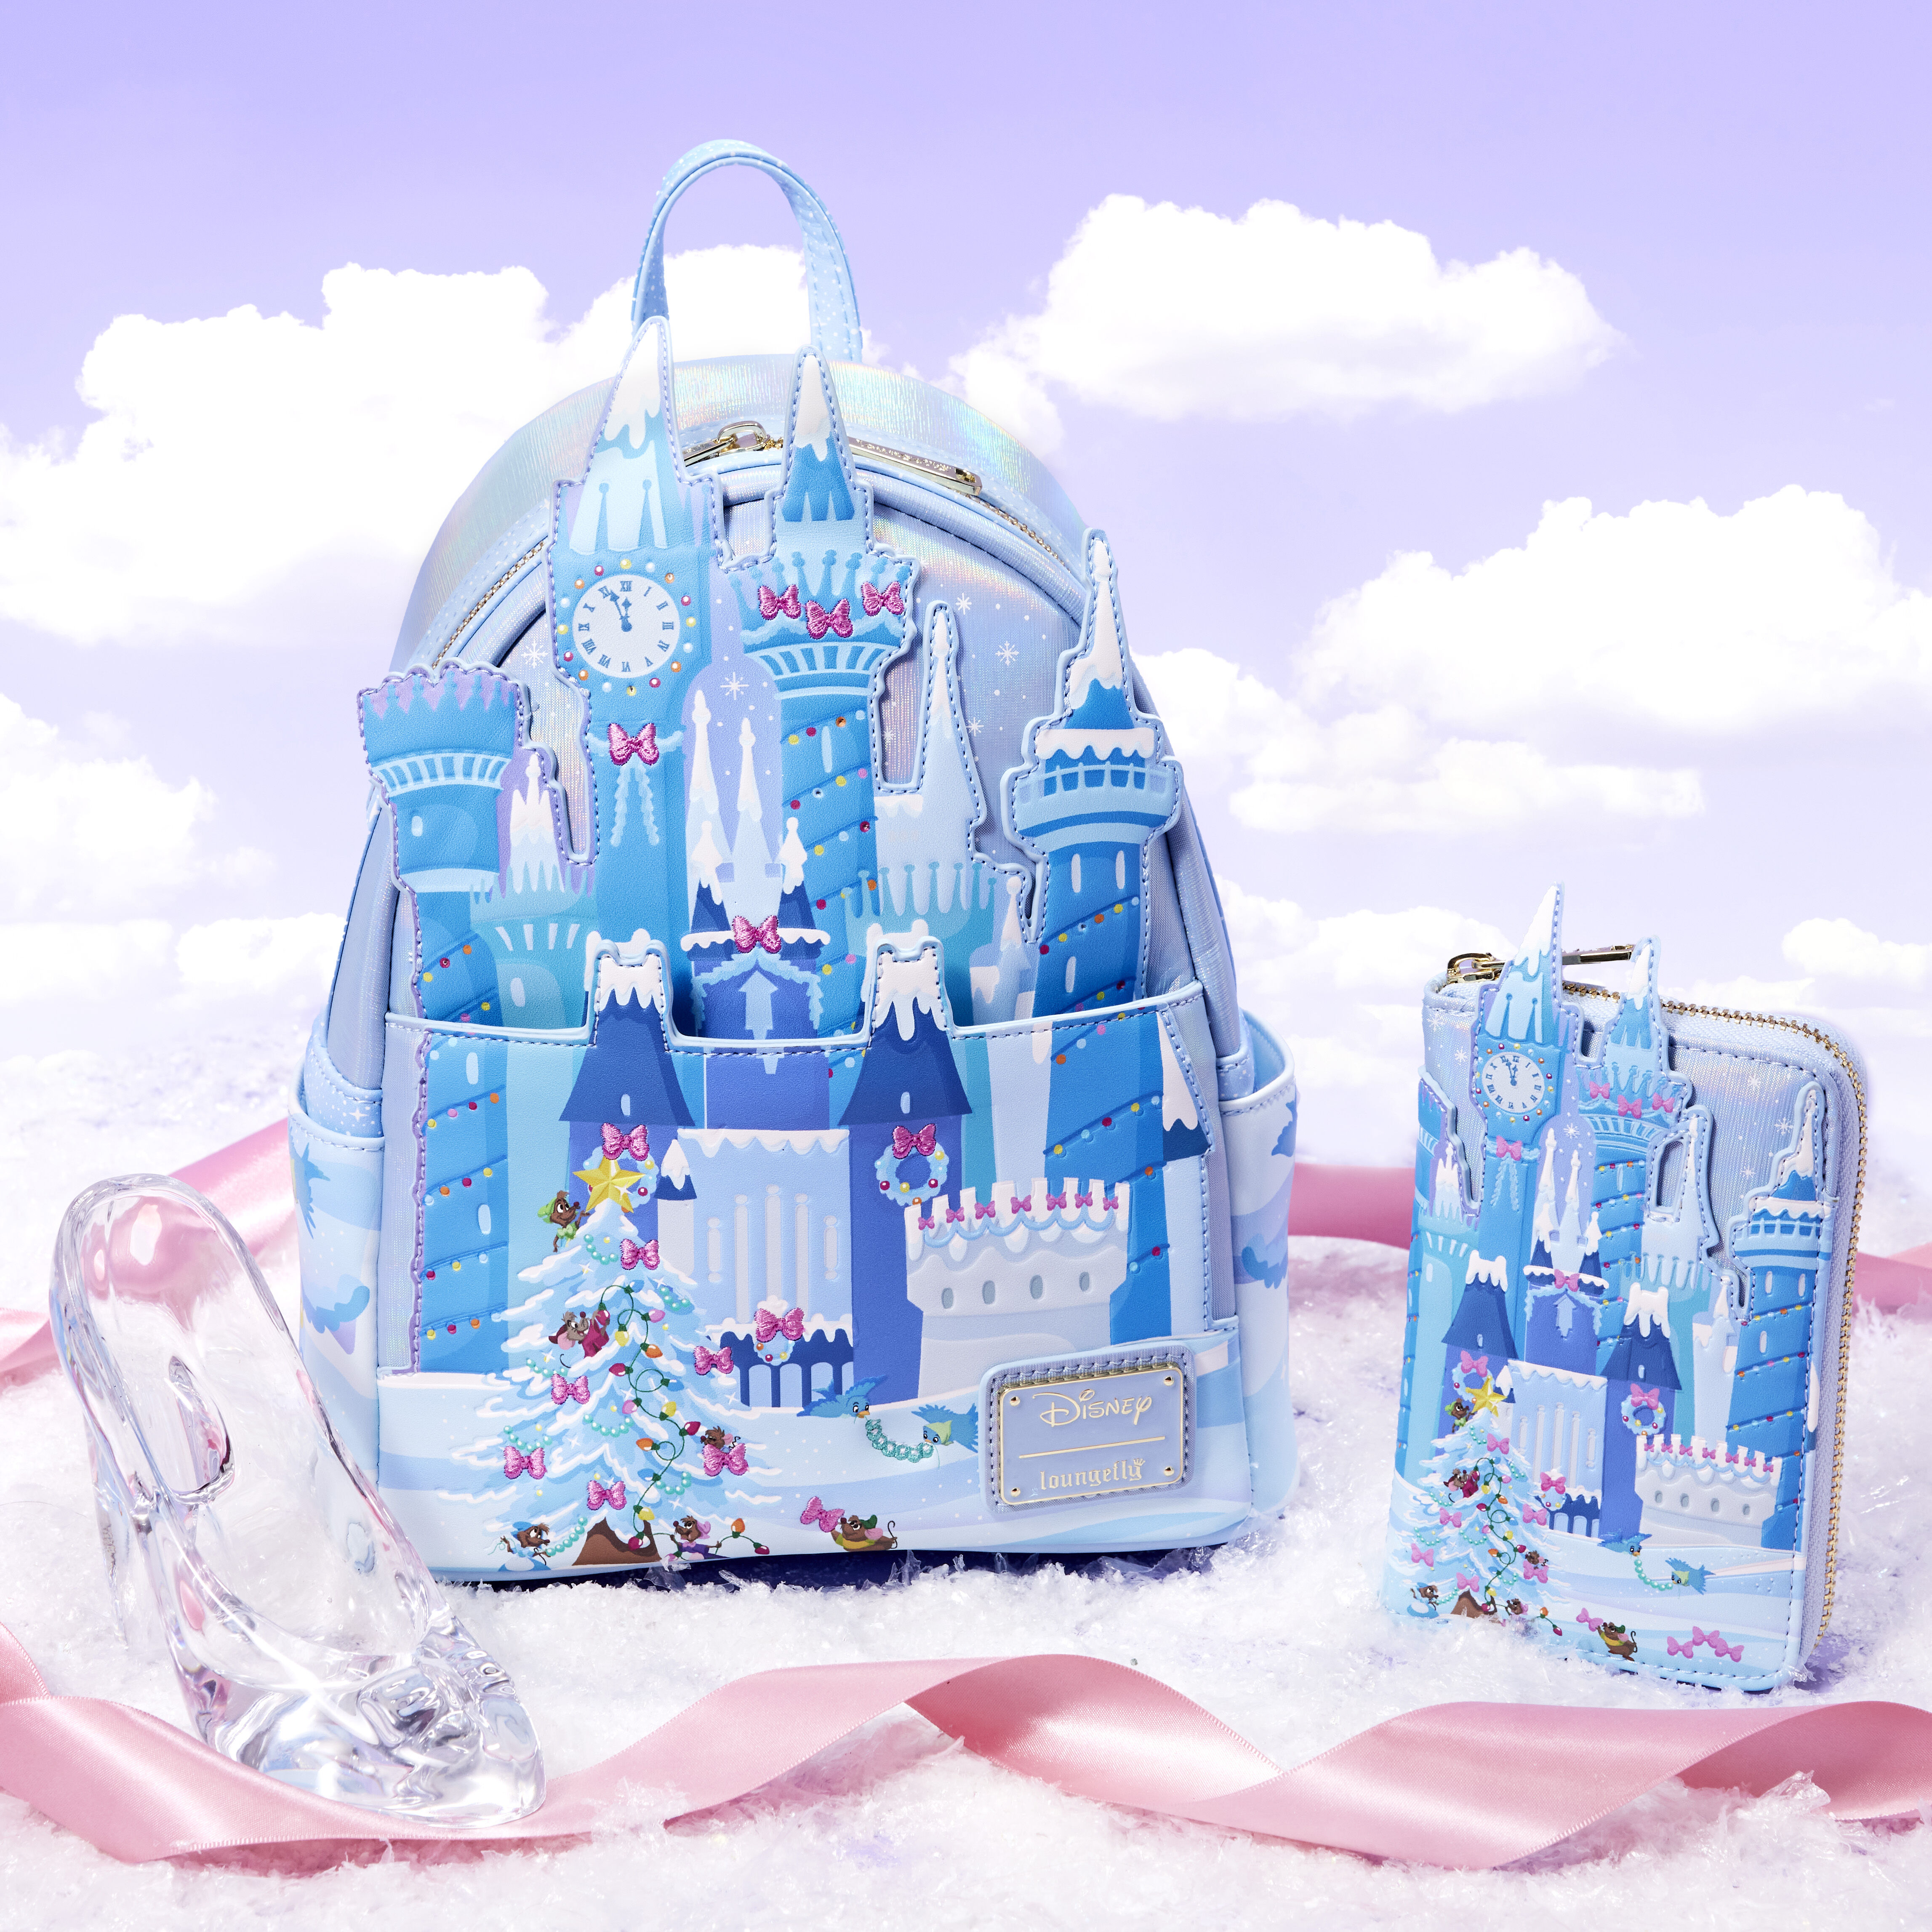 Buy Cinderella Exclusive Holiday Castle Zip Around Wallet at